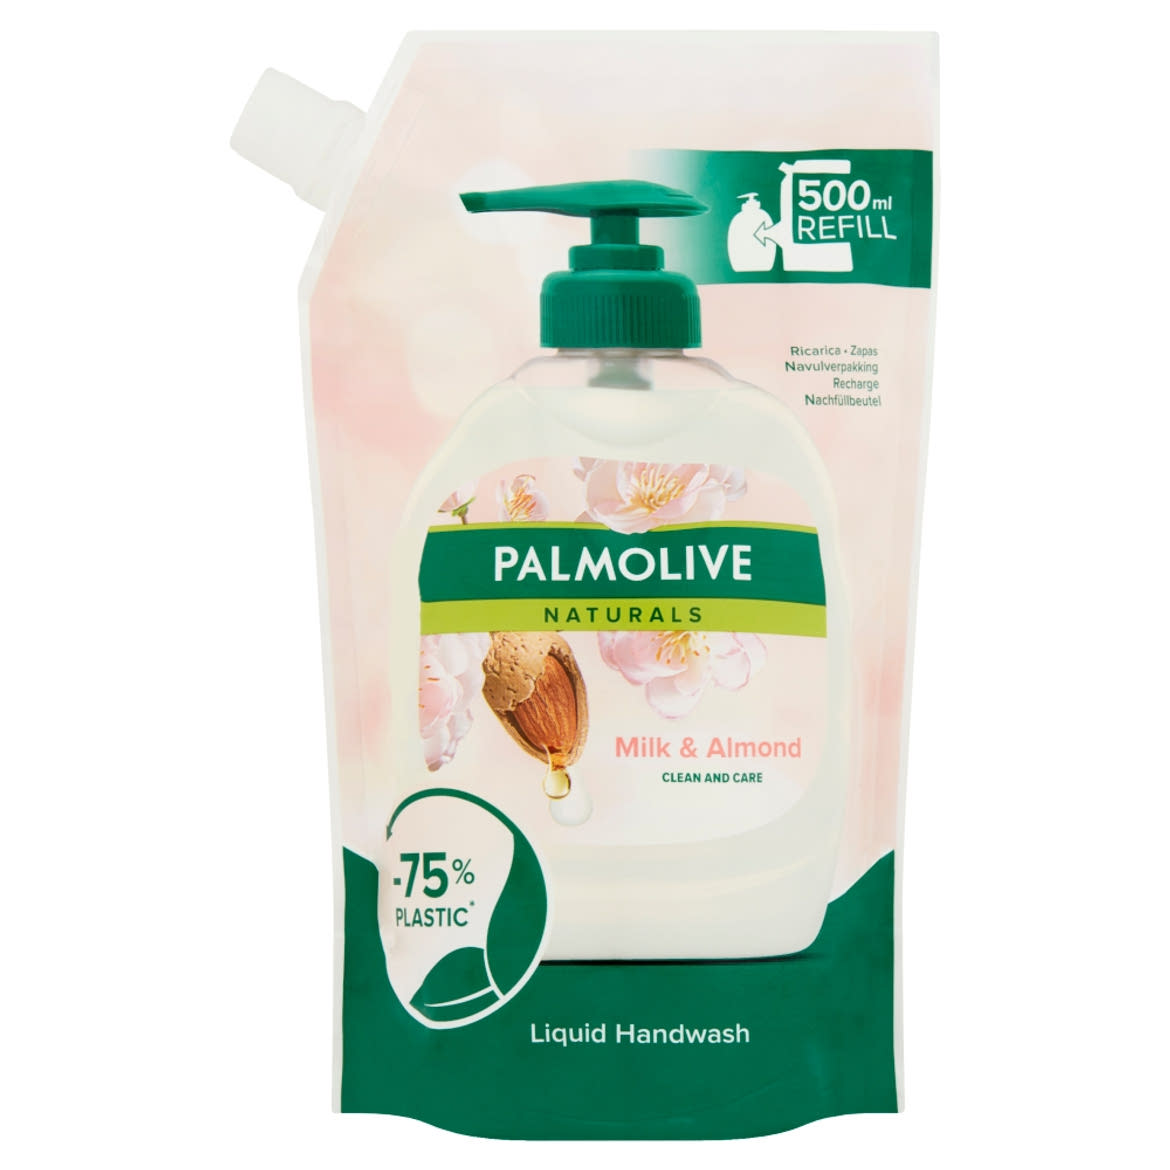 Palmolive Naturals Milk & Almond folyékony szappan utántöltő